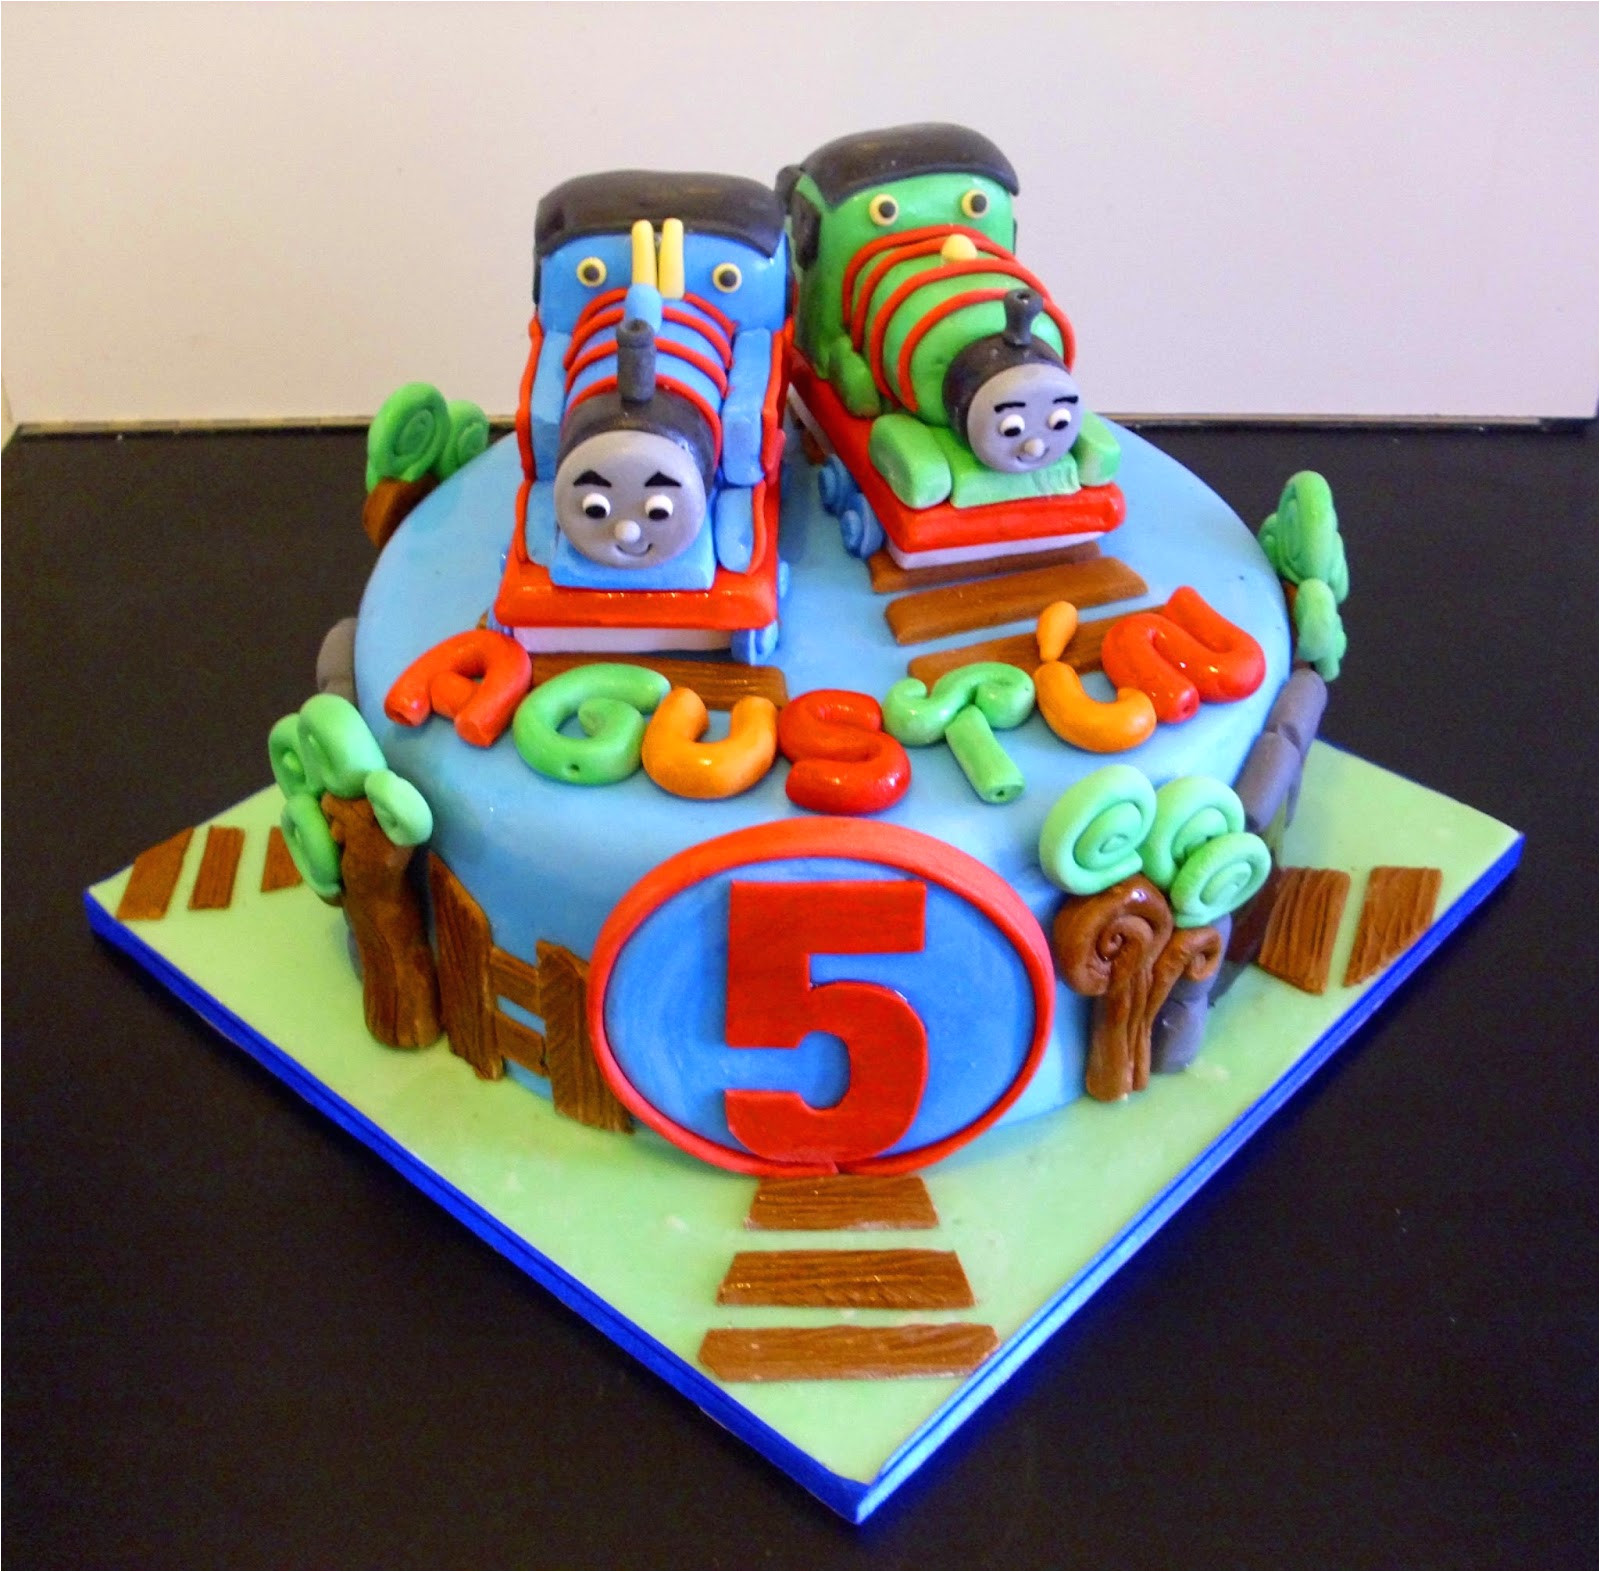 Decoracion De Cumpleaños De Futbol Para Niñas tortas De Cumpleanos Para Ninos Mis Bellas tortas Pasteles De